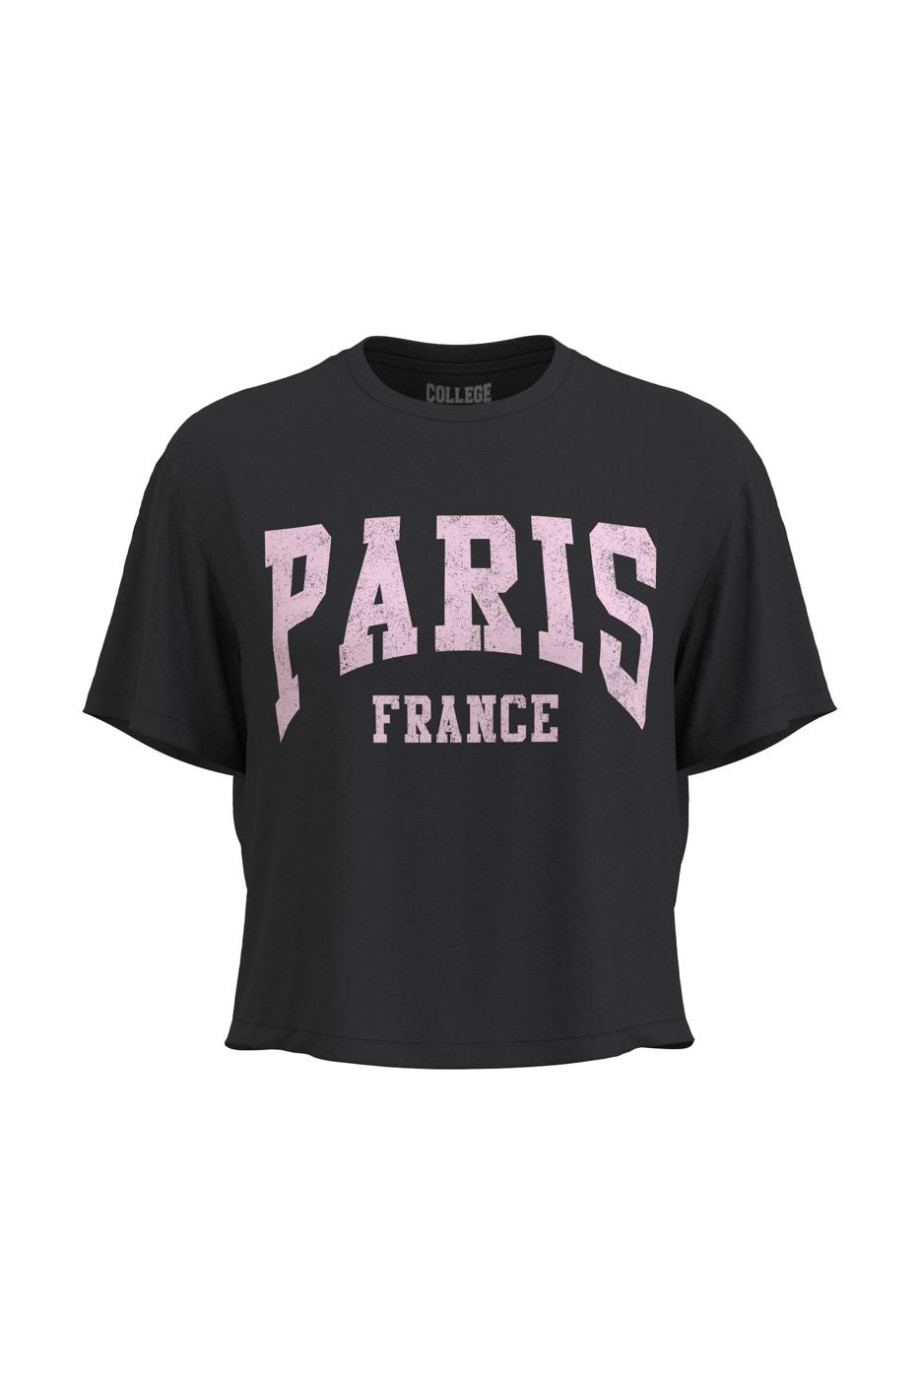 Camiseta unicolor crop top con cuello redondo y diseño college de París